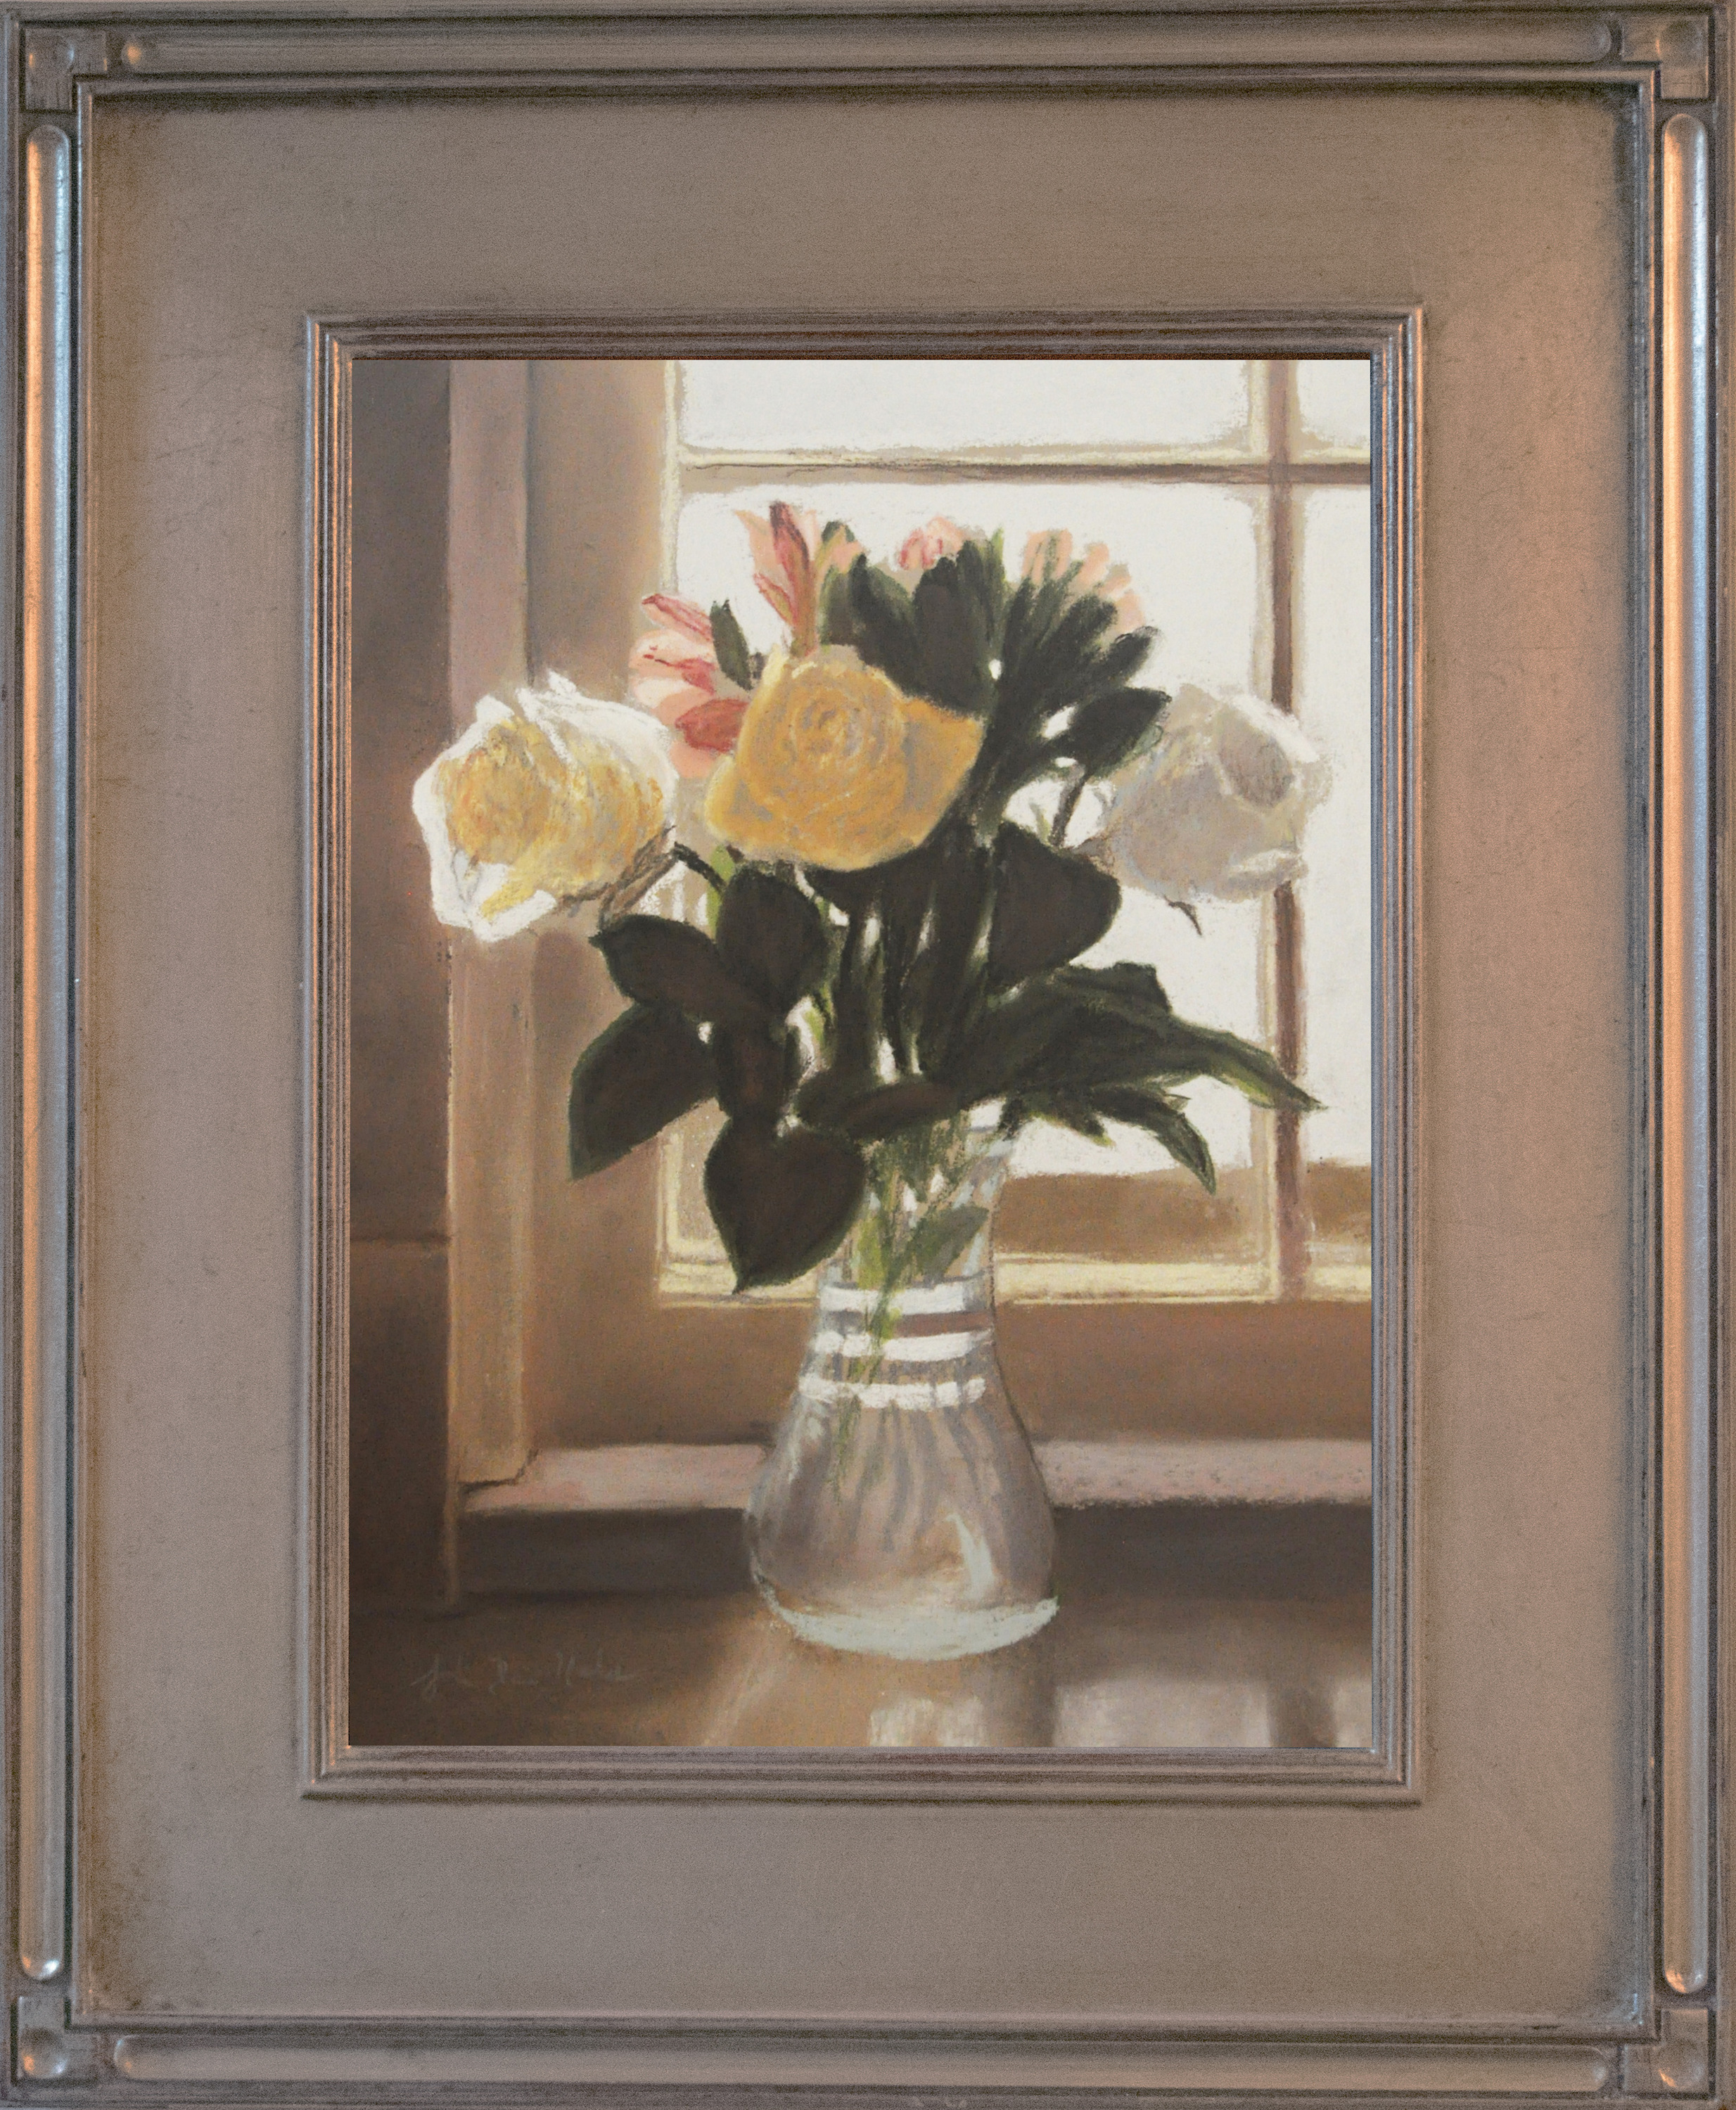 Three white roses   framed zubilj